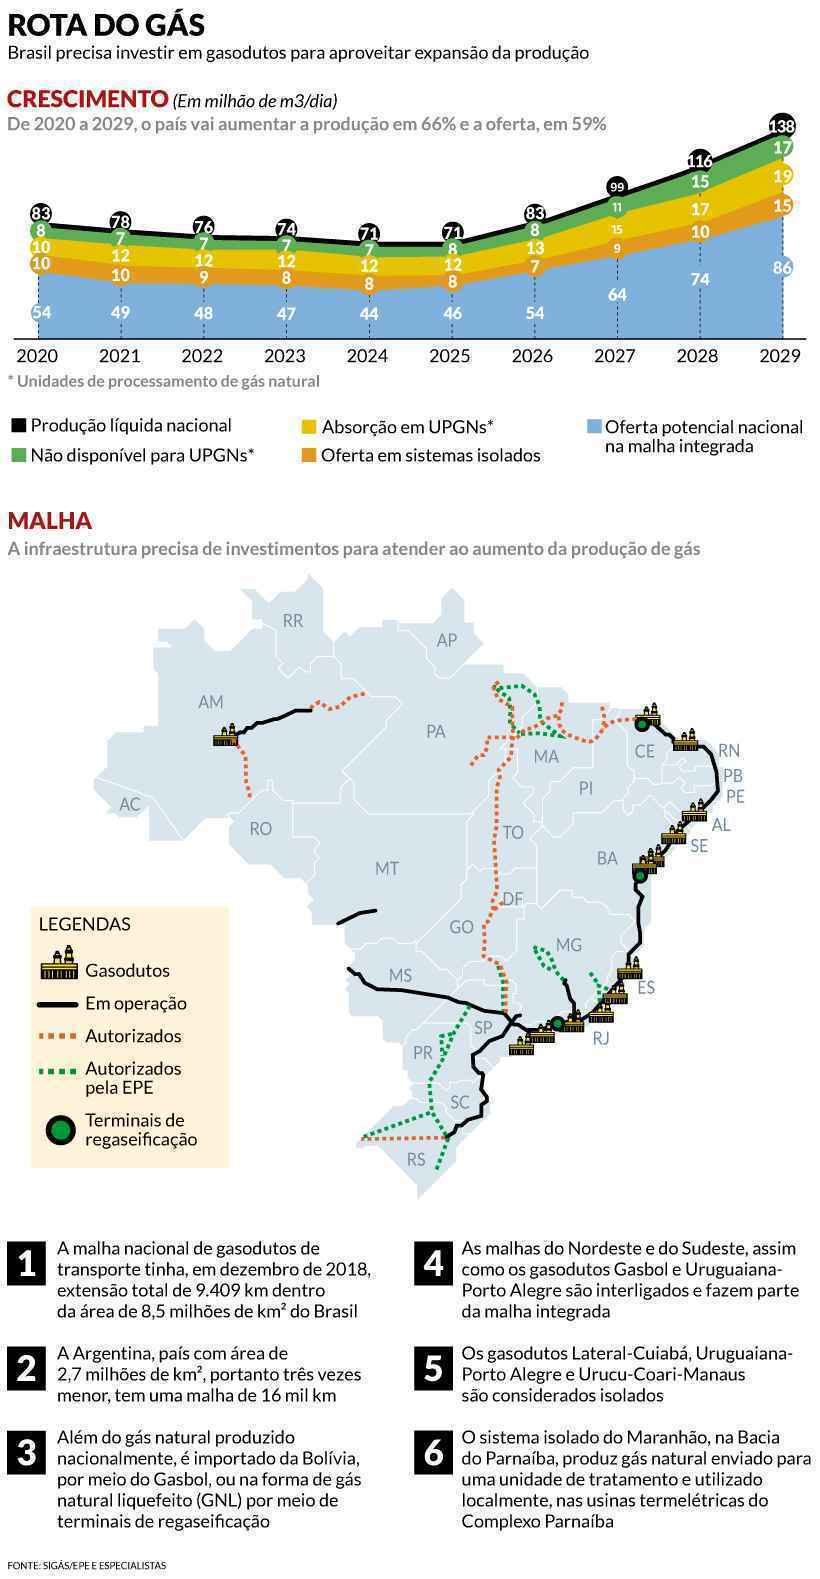 Oferta de gás natural no Brasil pode dobrar em 10 anos